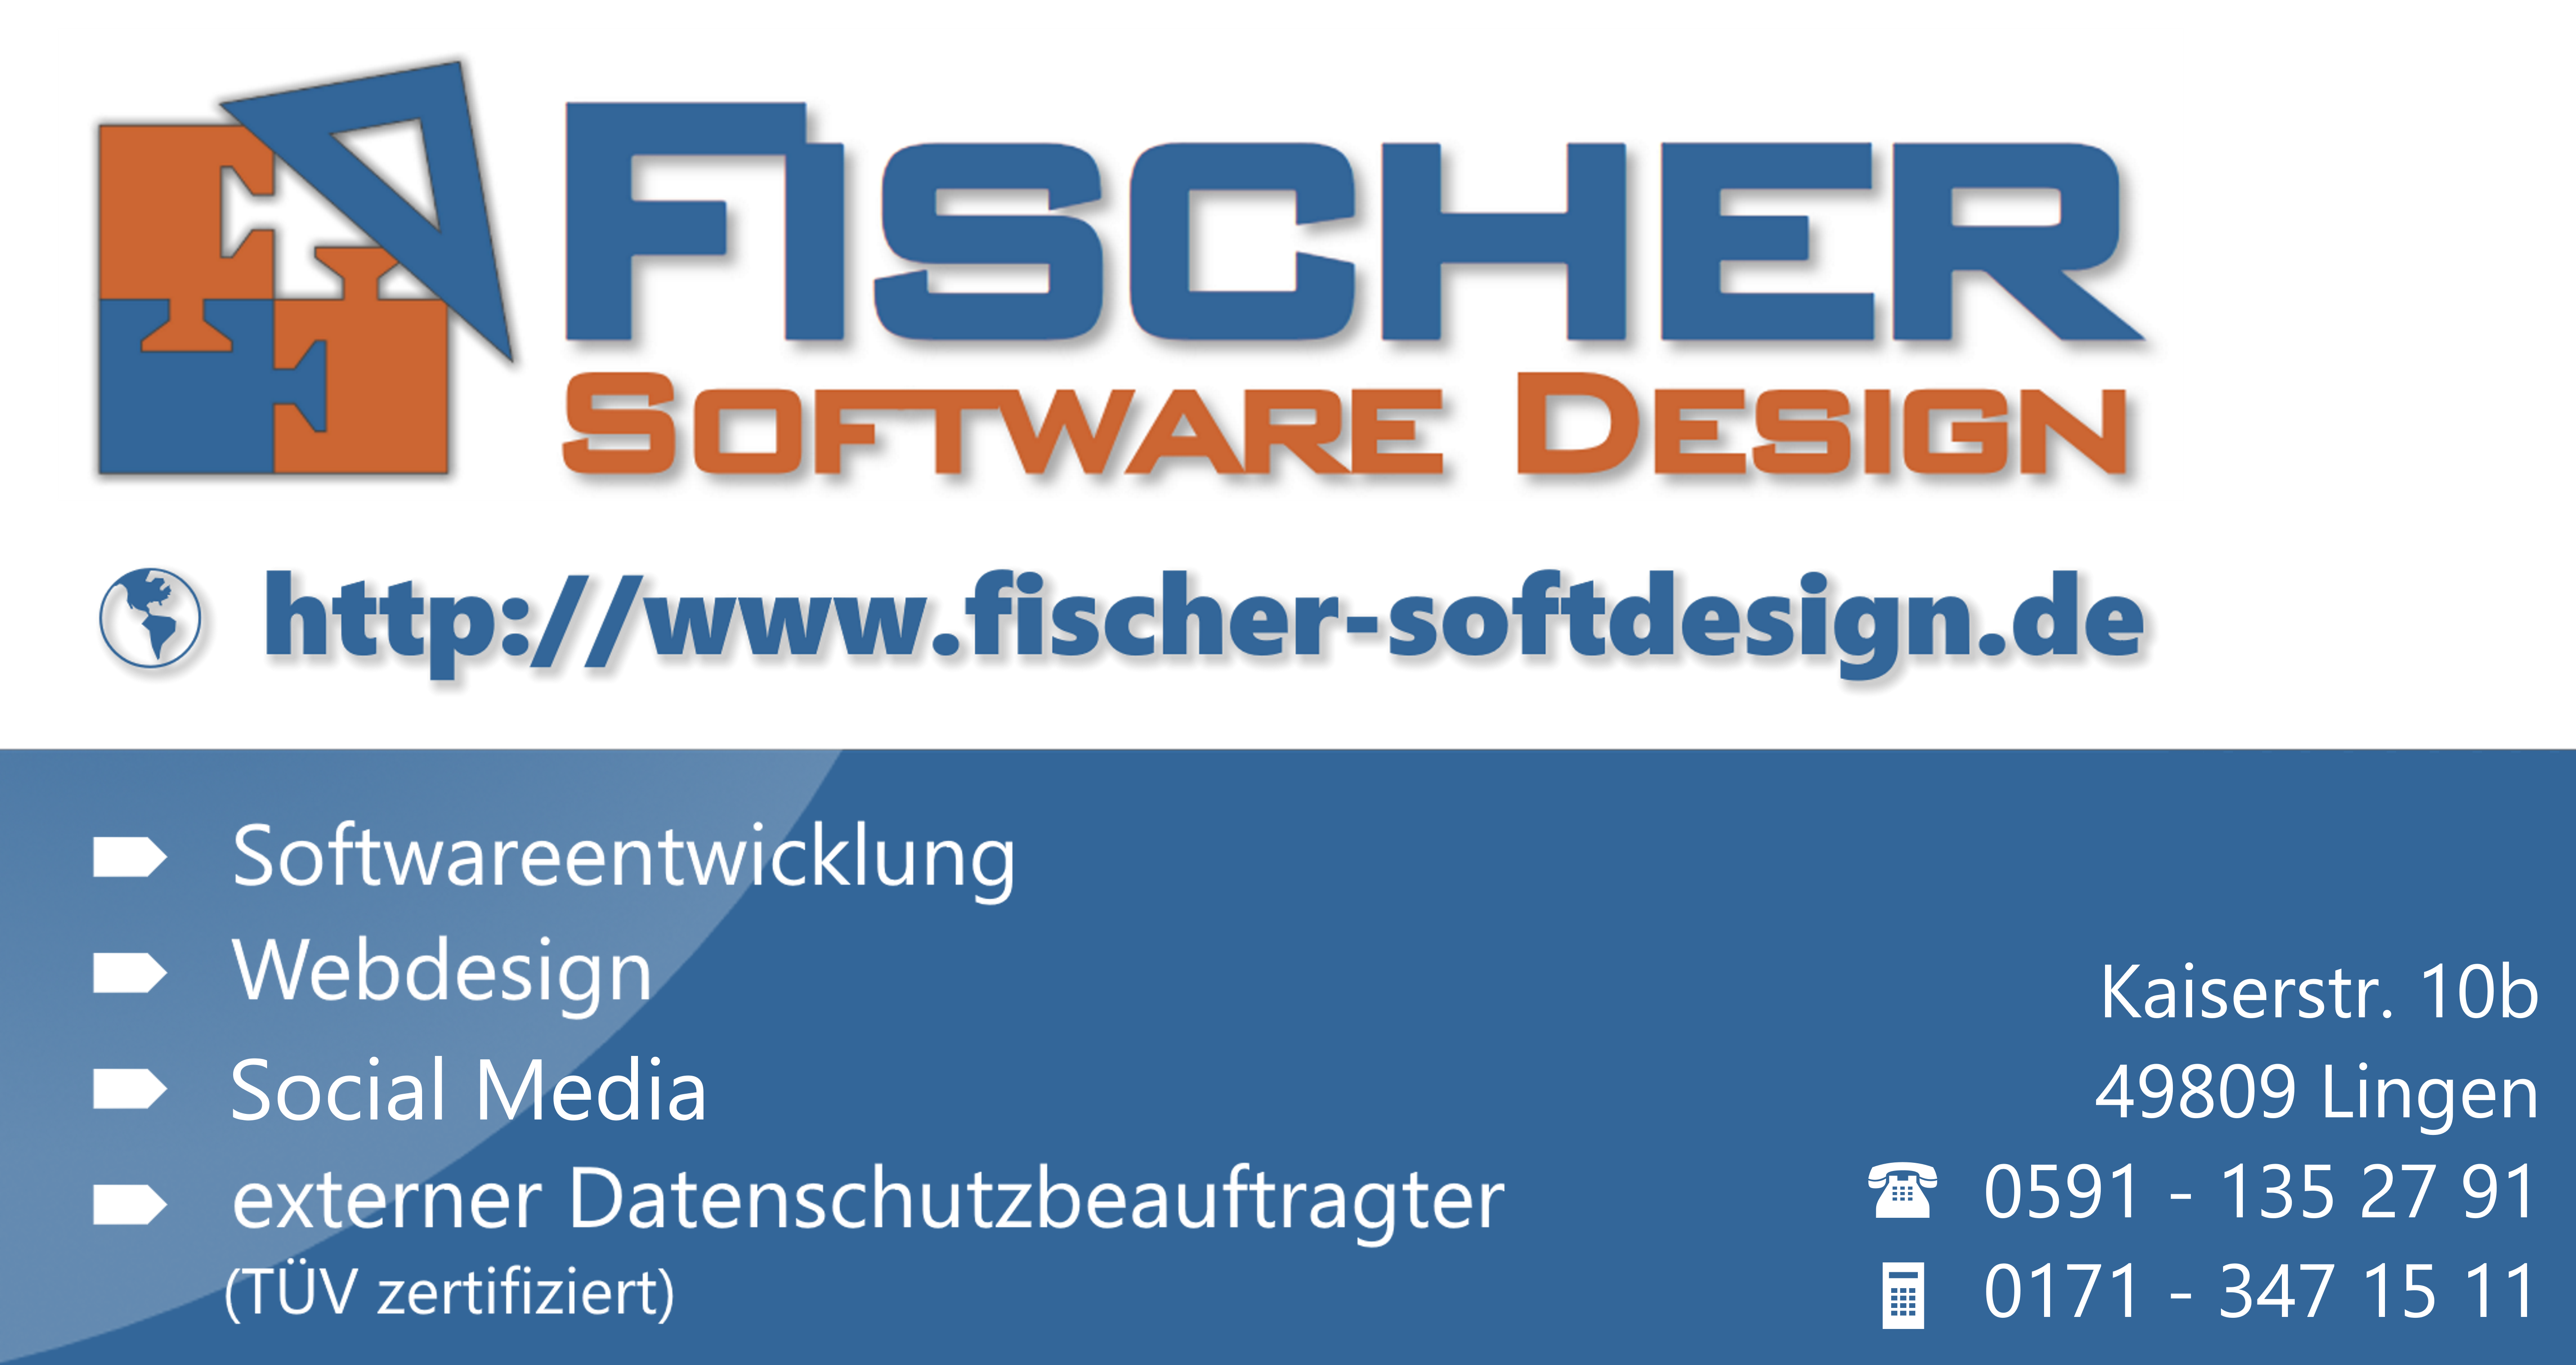 Fischer Software Design